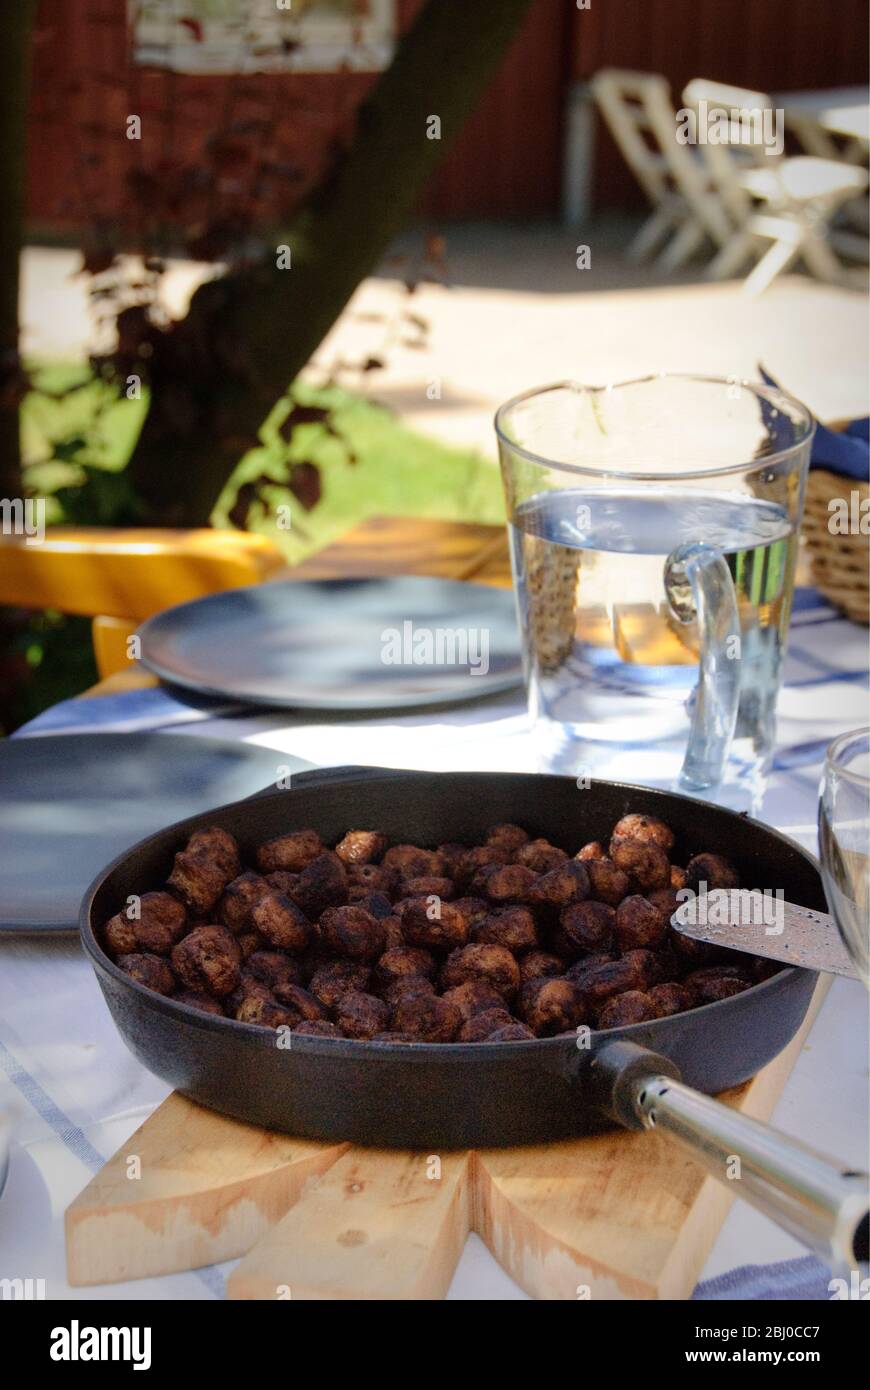 Bratpfanne mit schwedischen Fleischbällchen auf dem Tisch draußen in der Sommersonne - Stockfoto